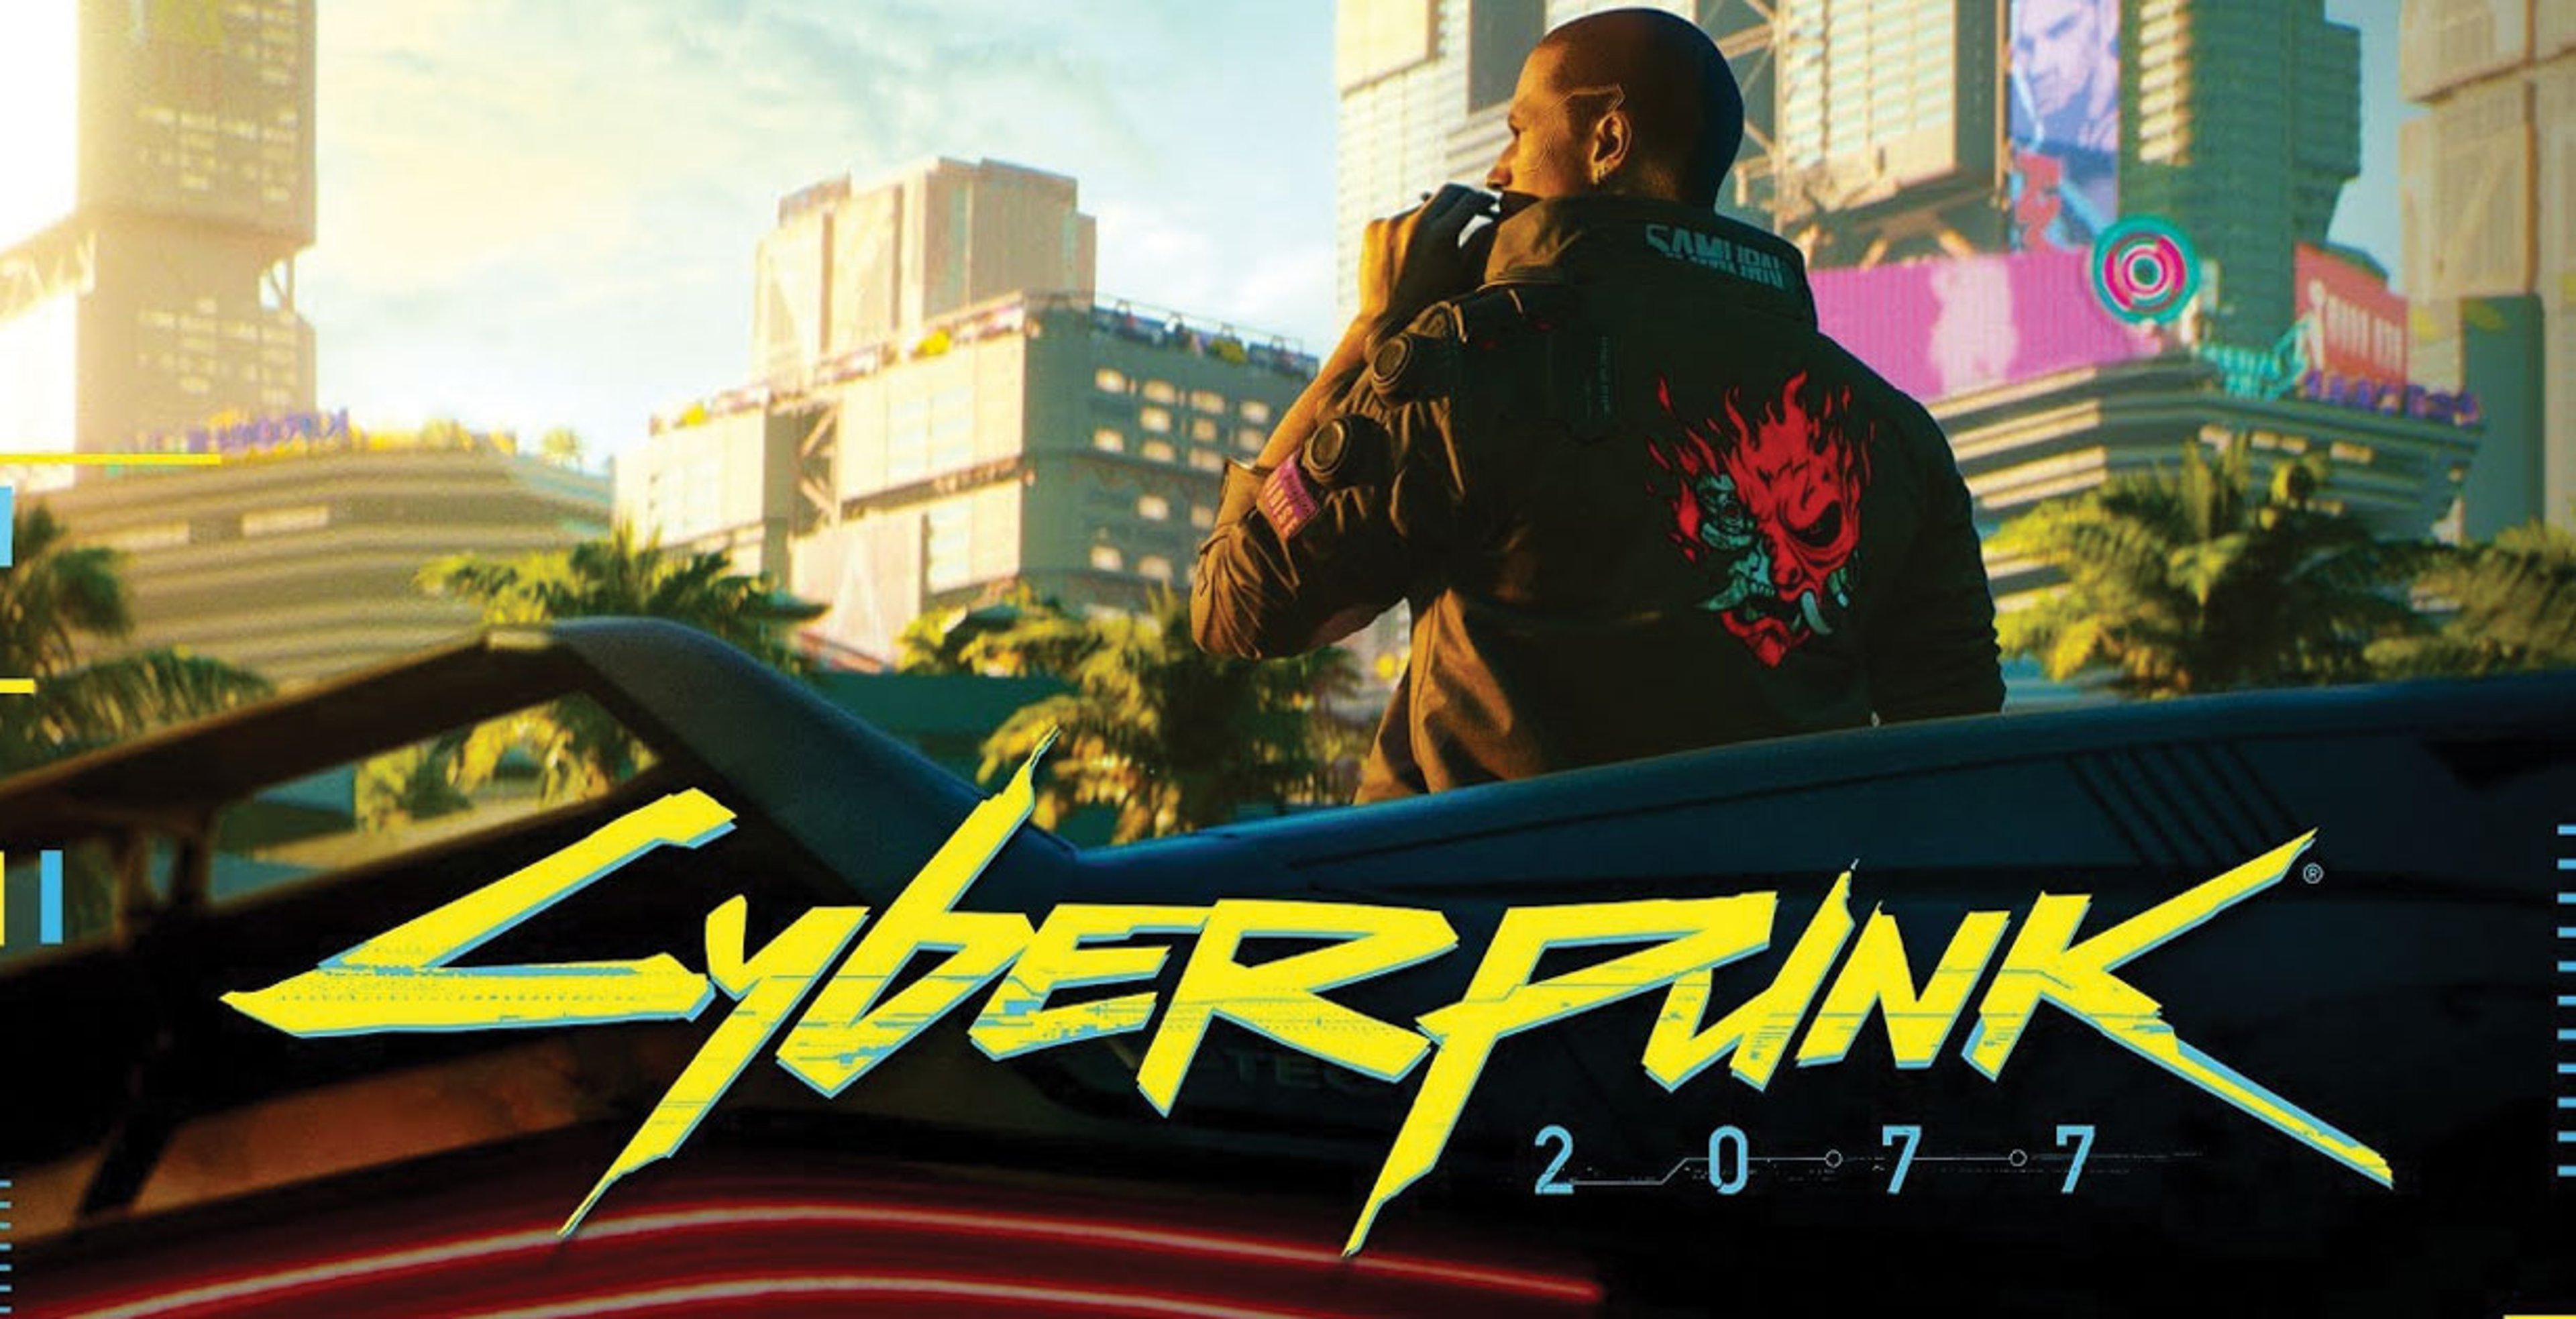 Cyberpunk 2077, impressioni dalla demo dell’E3 2018 – Anteprima Cover